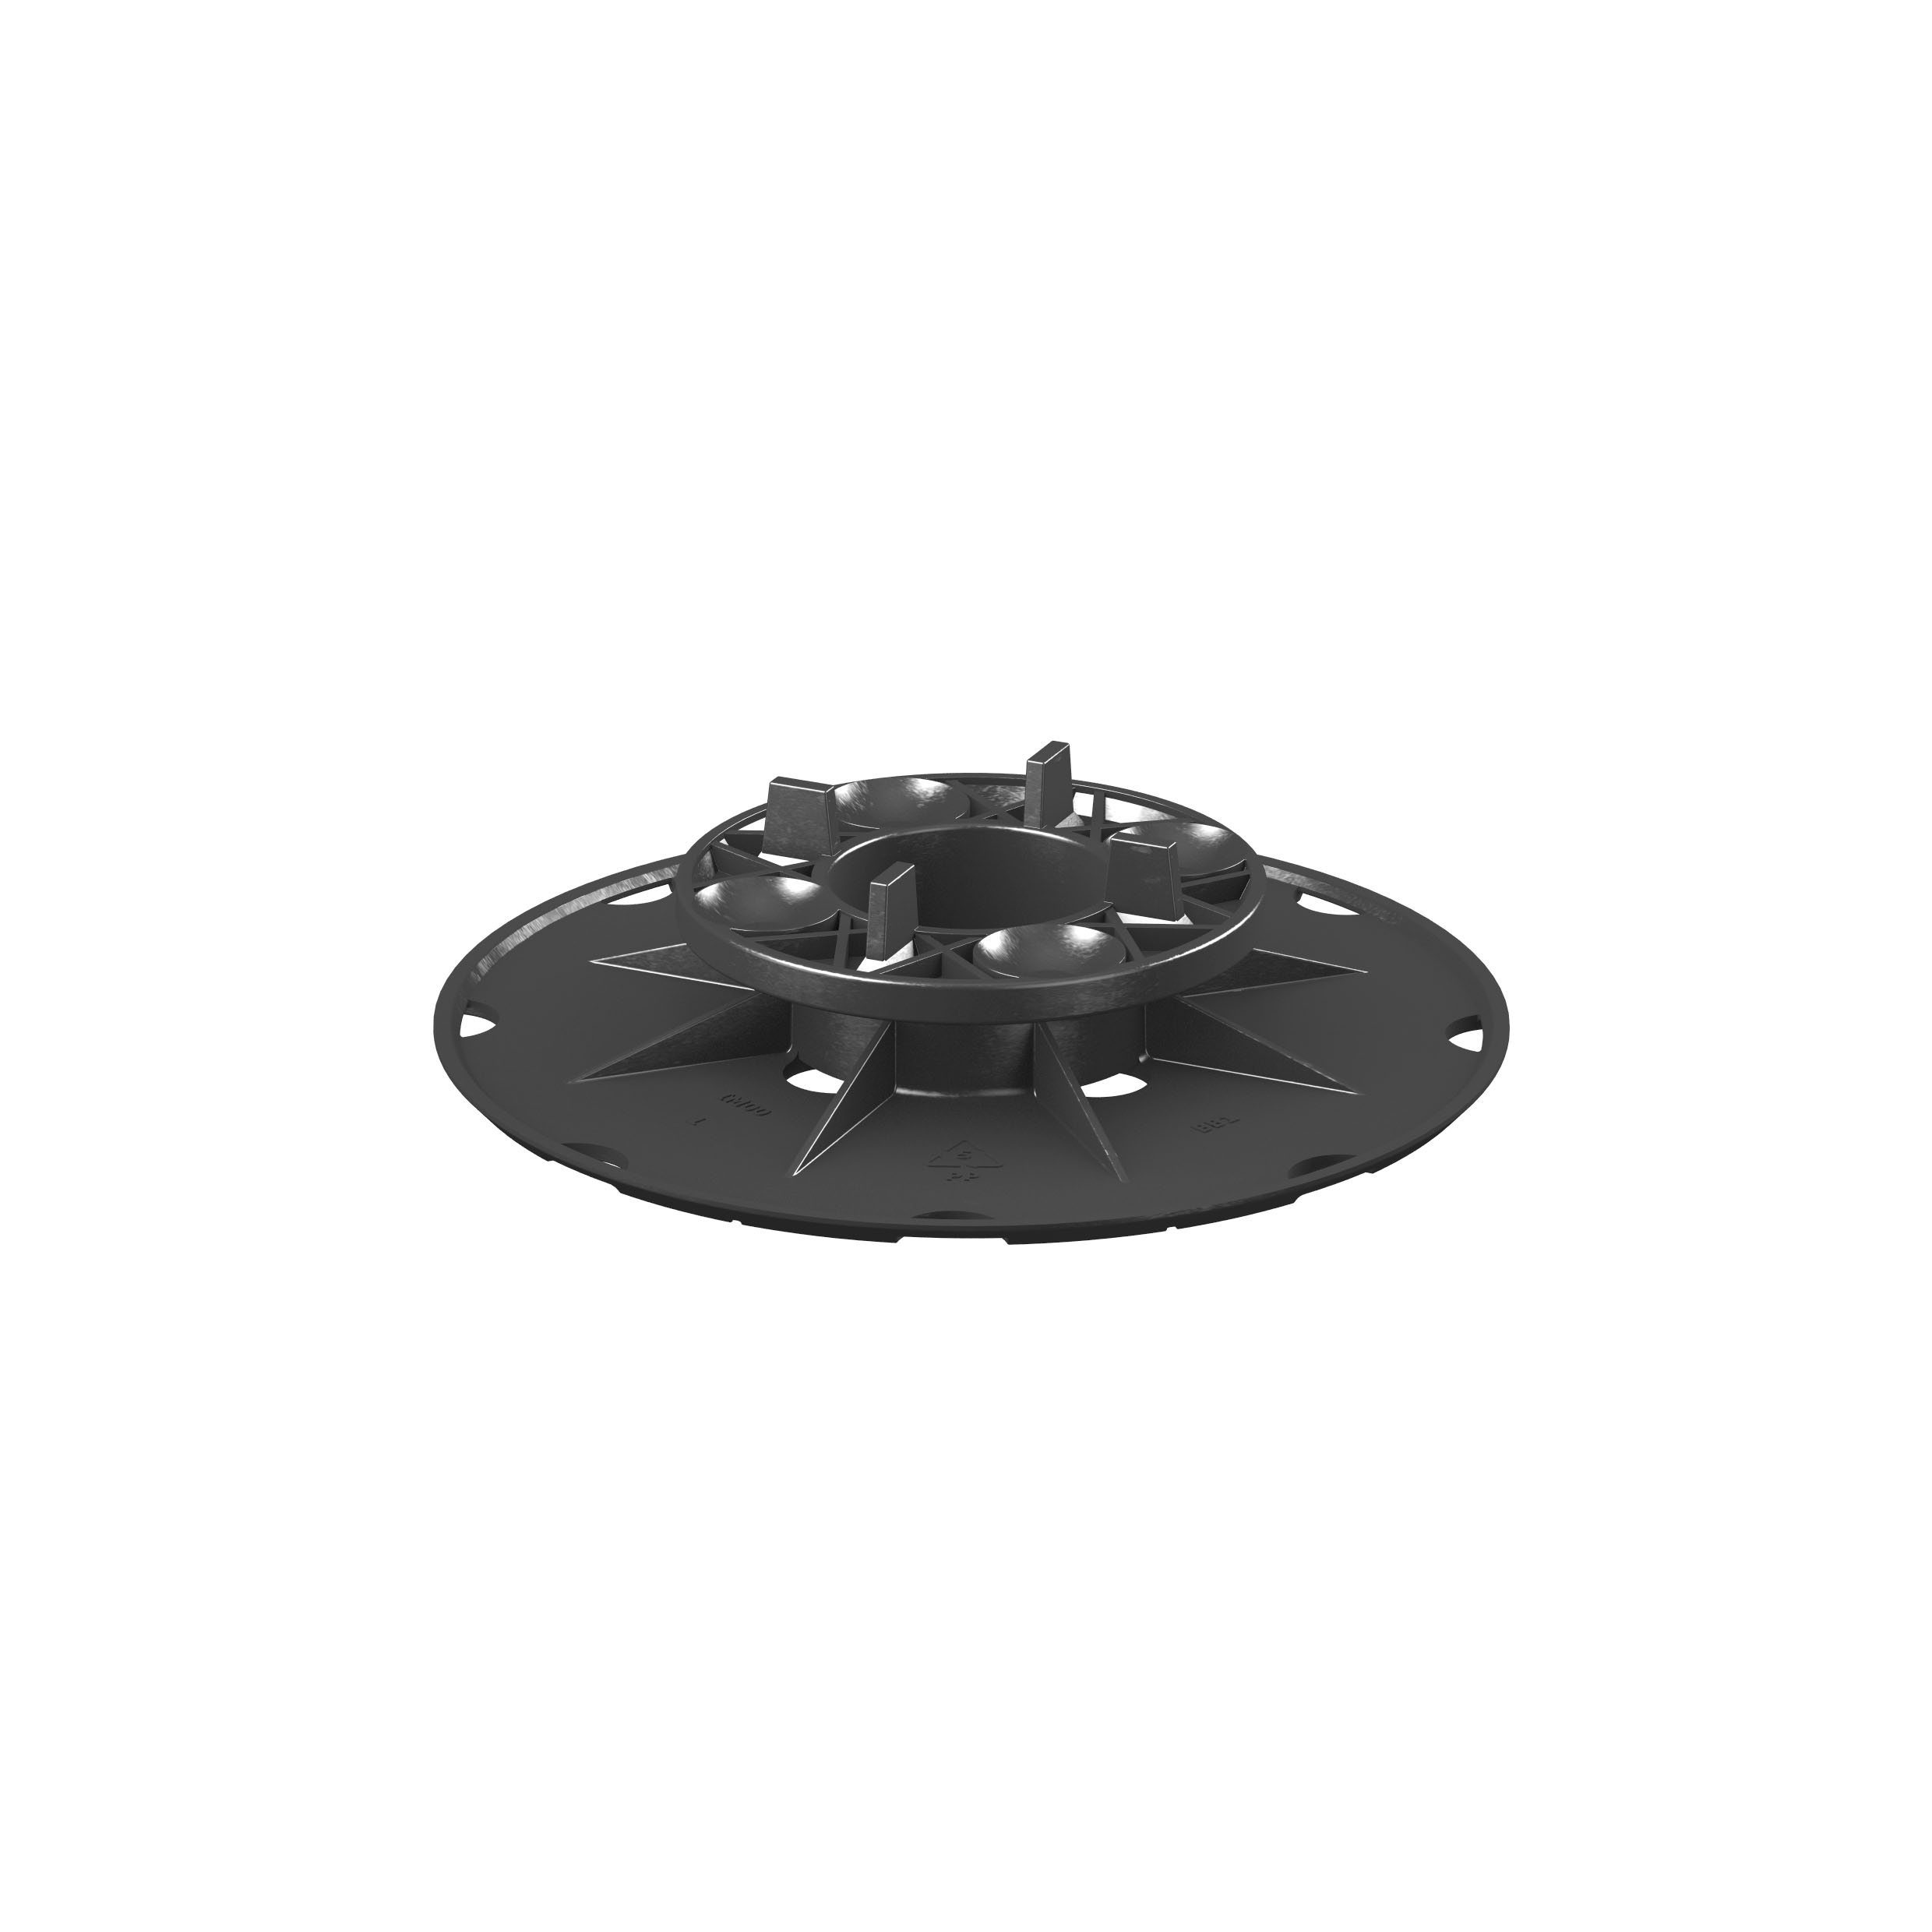 SB 1 Adjustable Pedestal support for raised floor (27-35 mm)